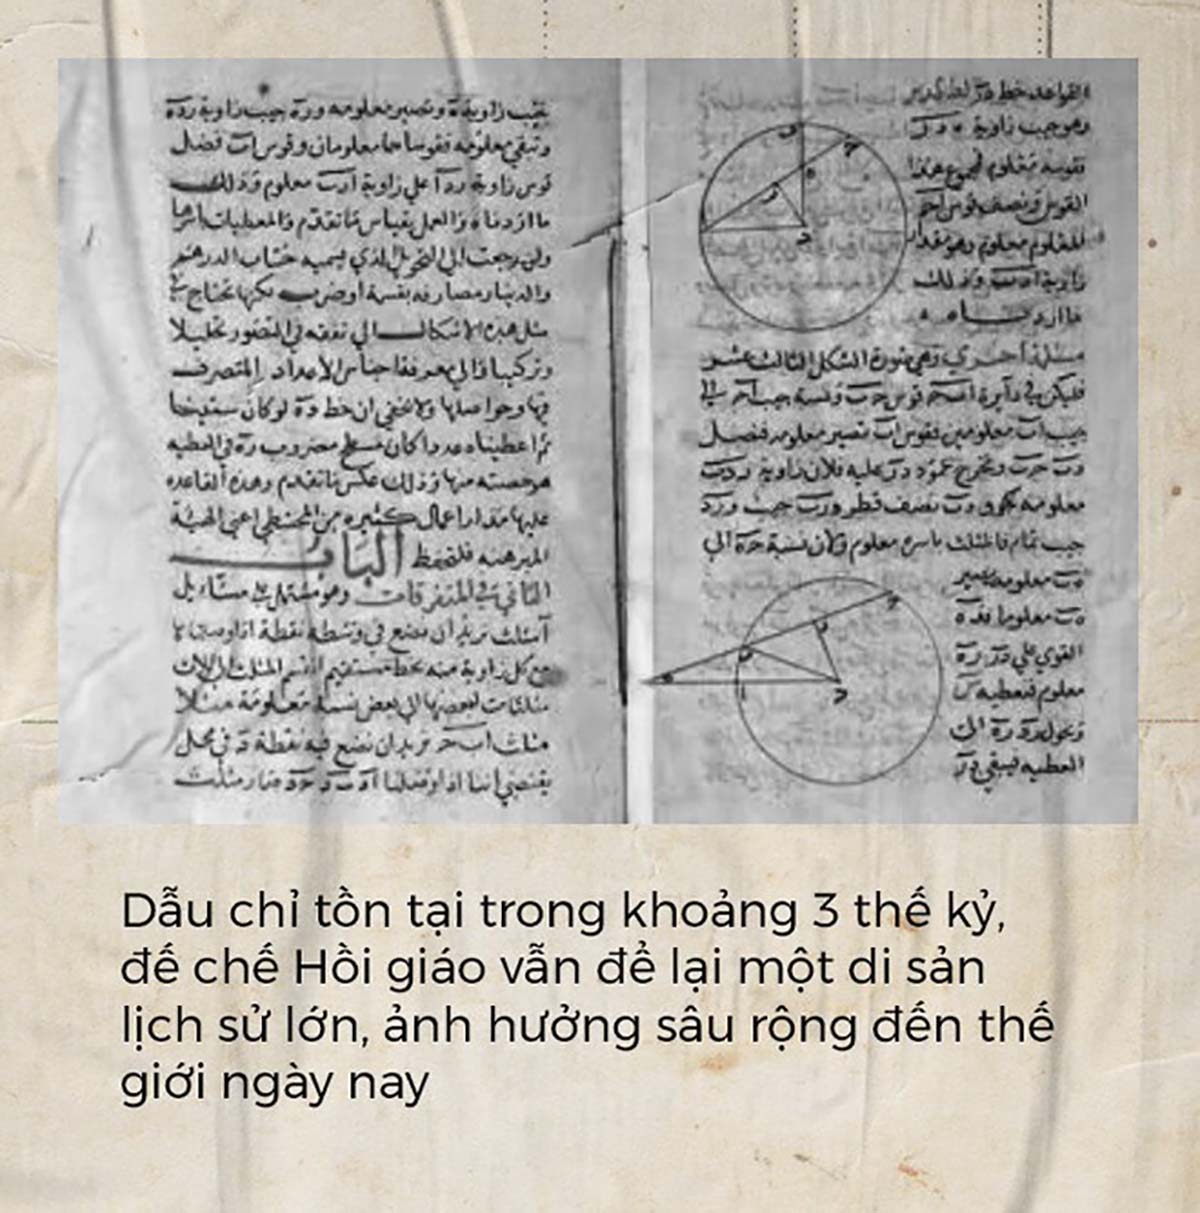 Một tài liệu toán học tiếng Ả Rập từ nền văn minh Hồi giáo